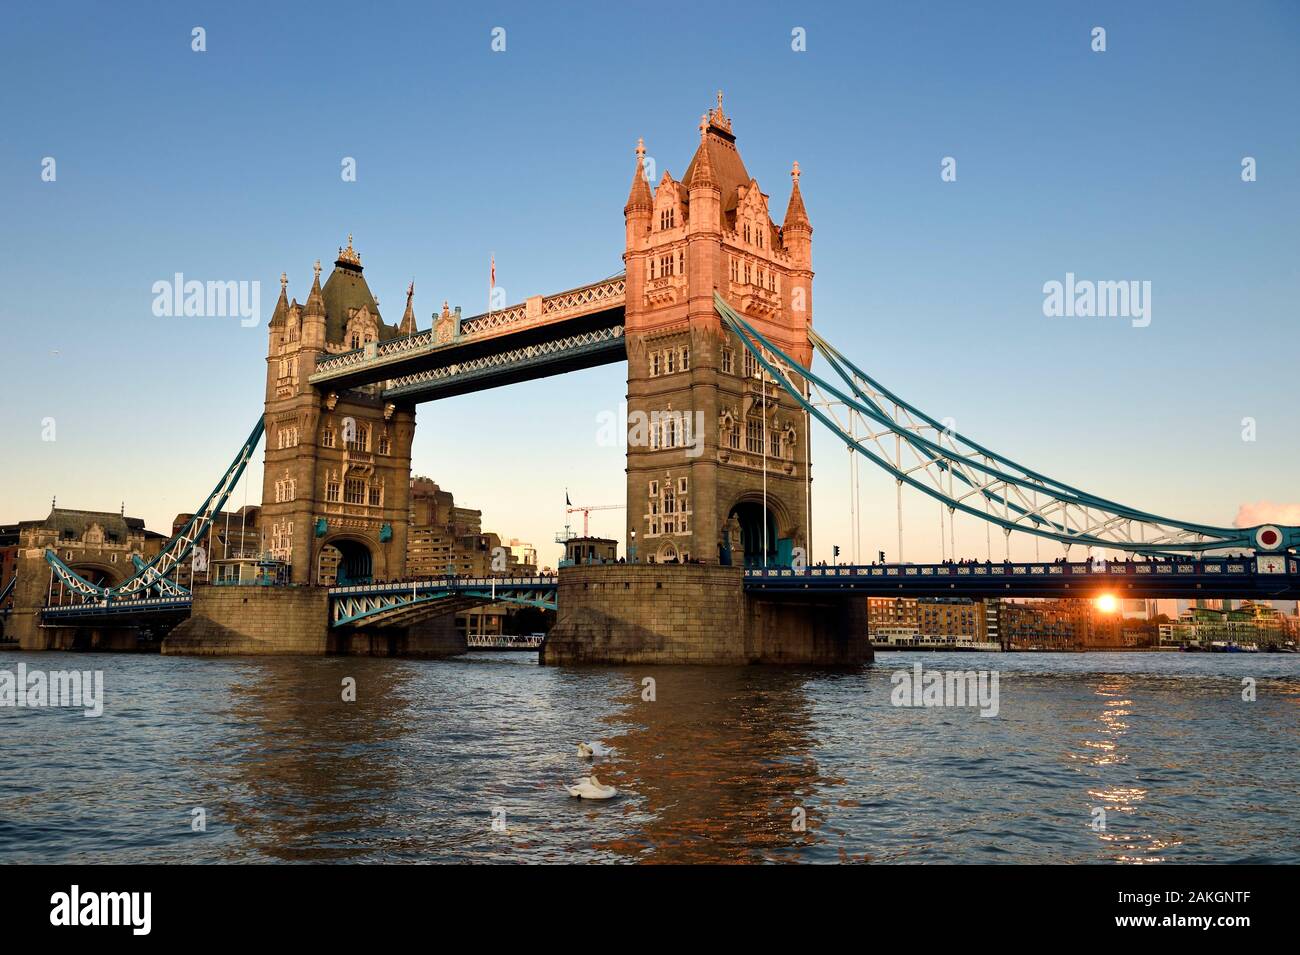 Vereinigtes Königreich, London, Tower Bridge, Swing Bridge über der Themse, zwischen den Stadtteilen Southwark und Tower Hamlets Stockfoto